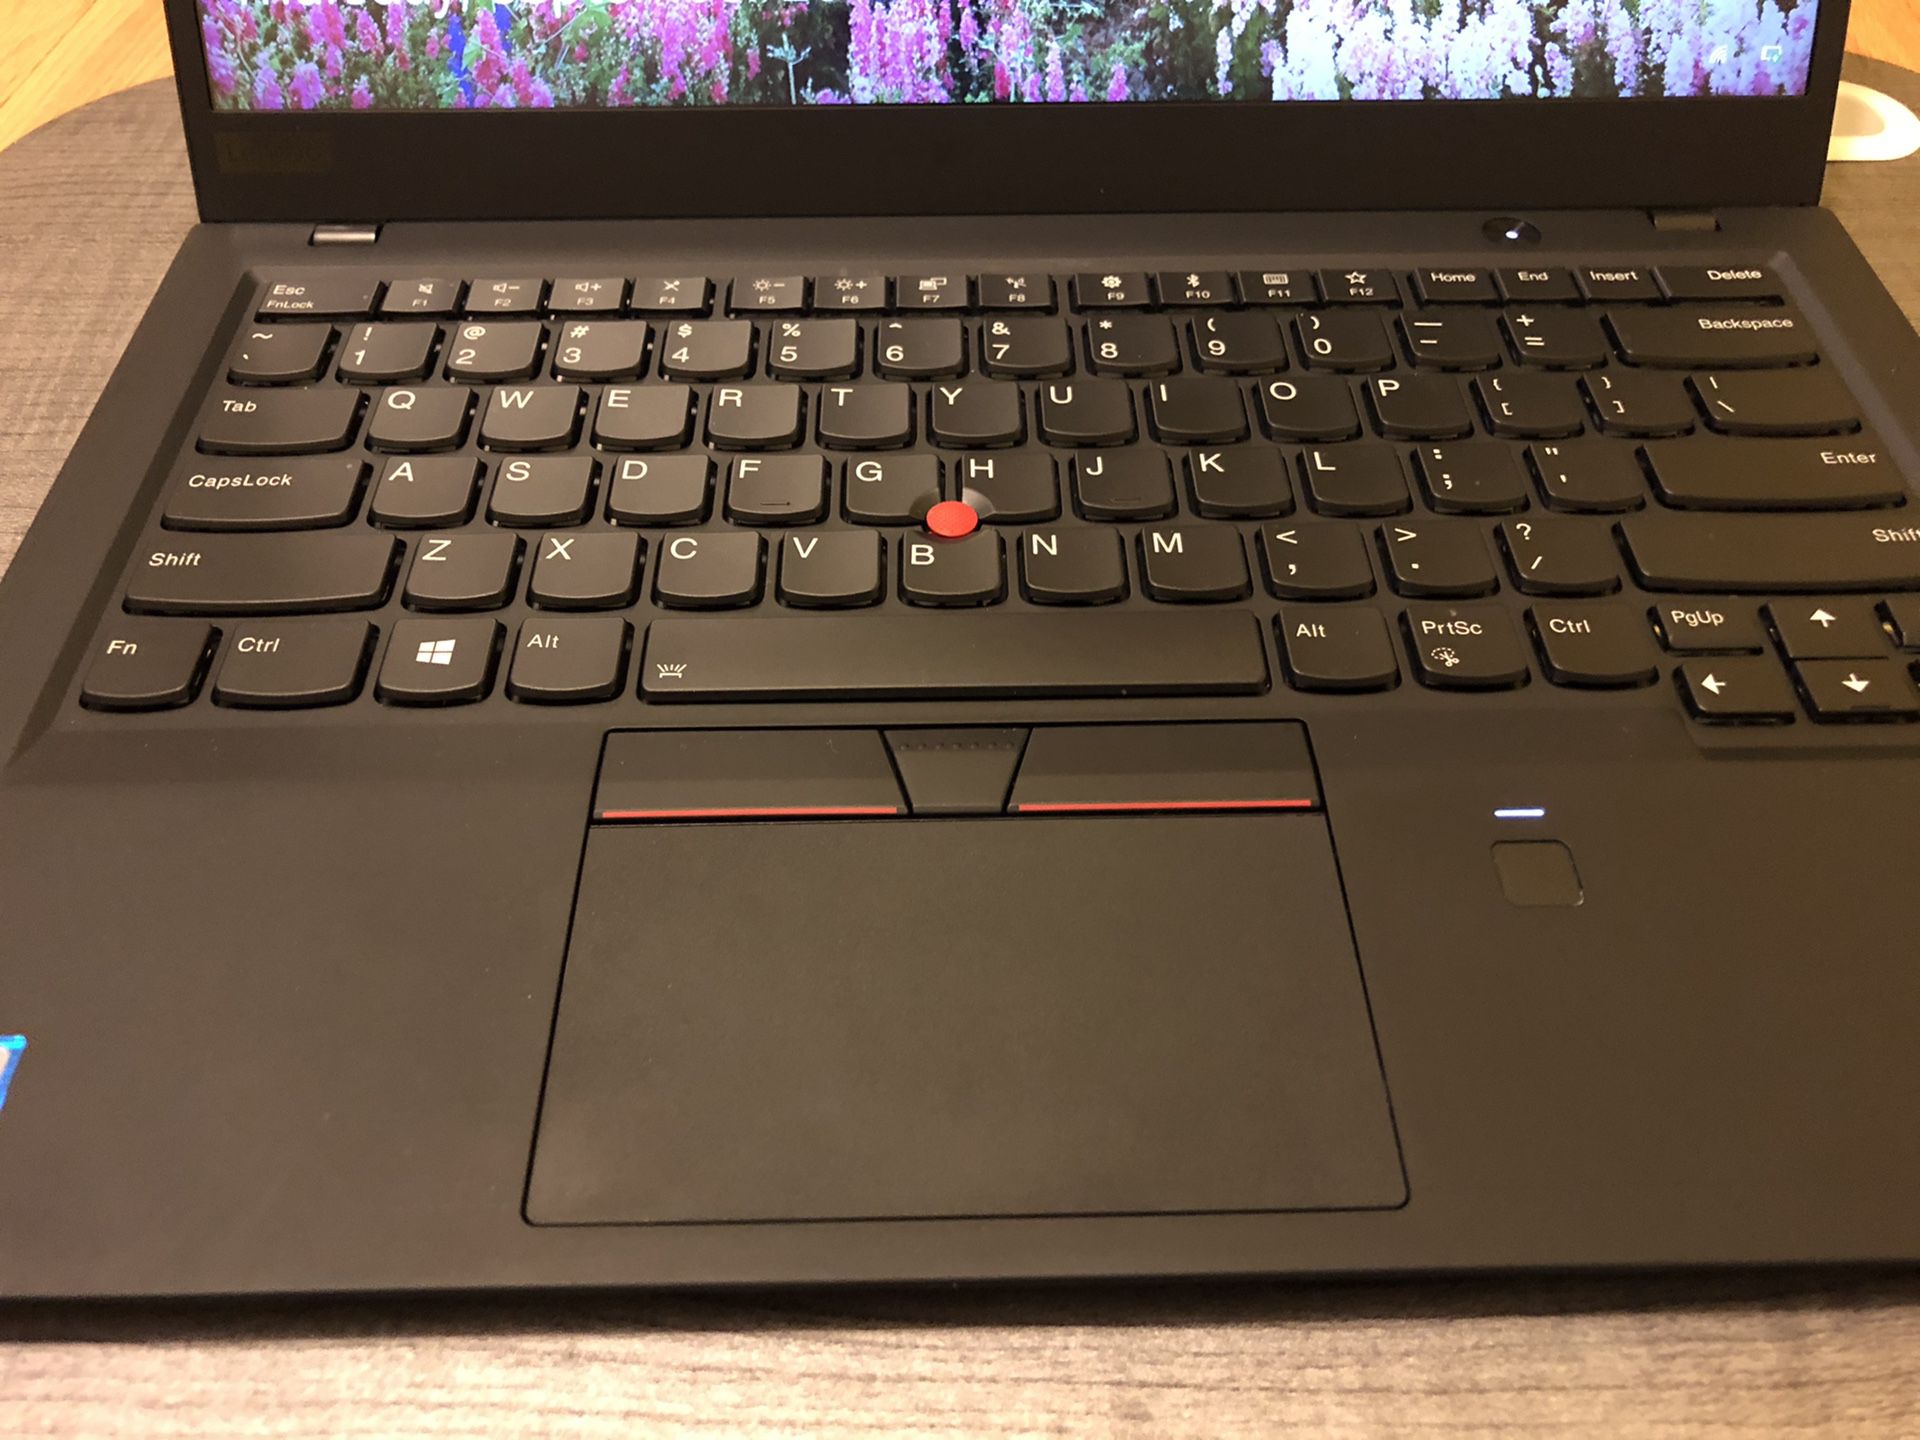 ThinkPad X1 Carbon 6th Gen (2018 Model) 8gb / 256gb. Touch Screen, 3 year Factory Warranty